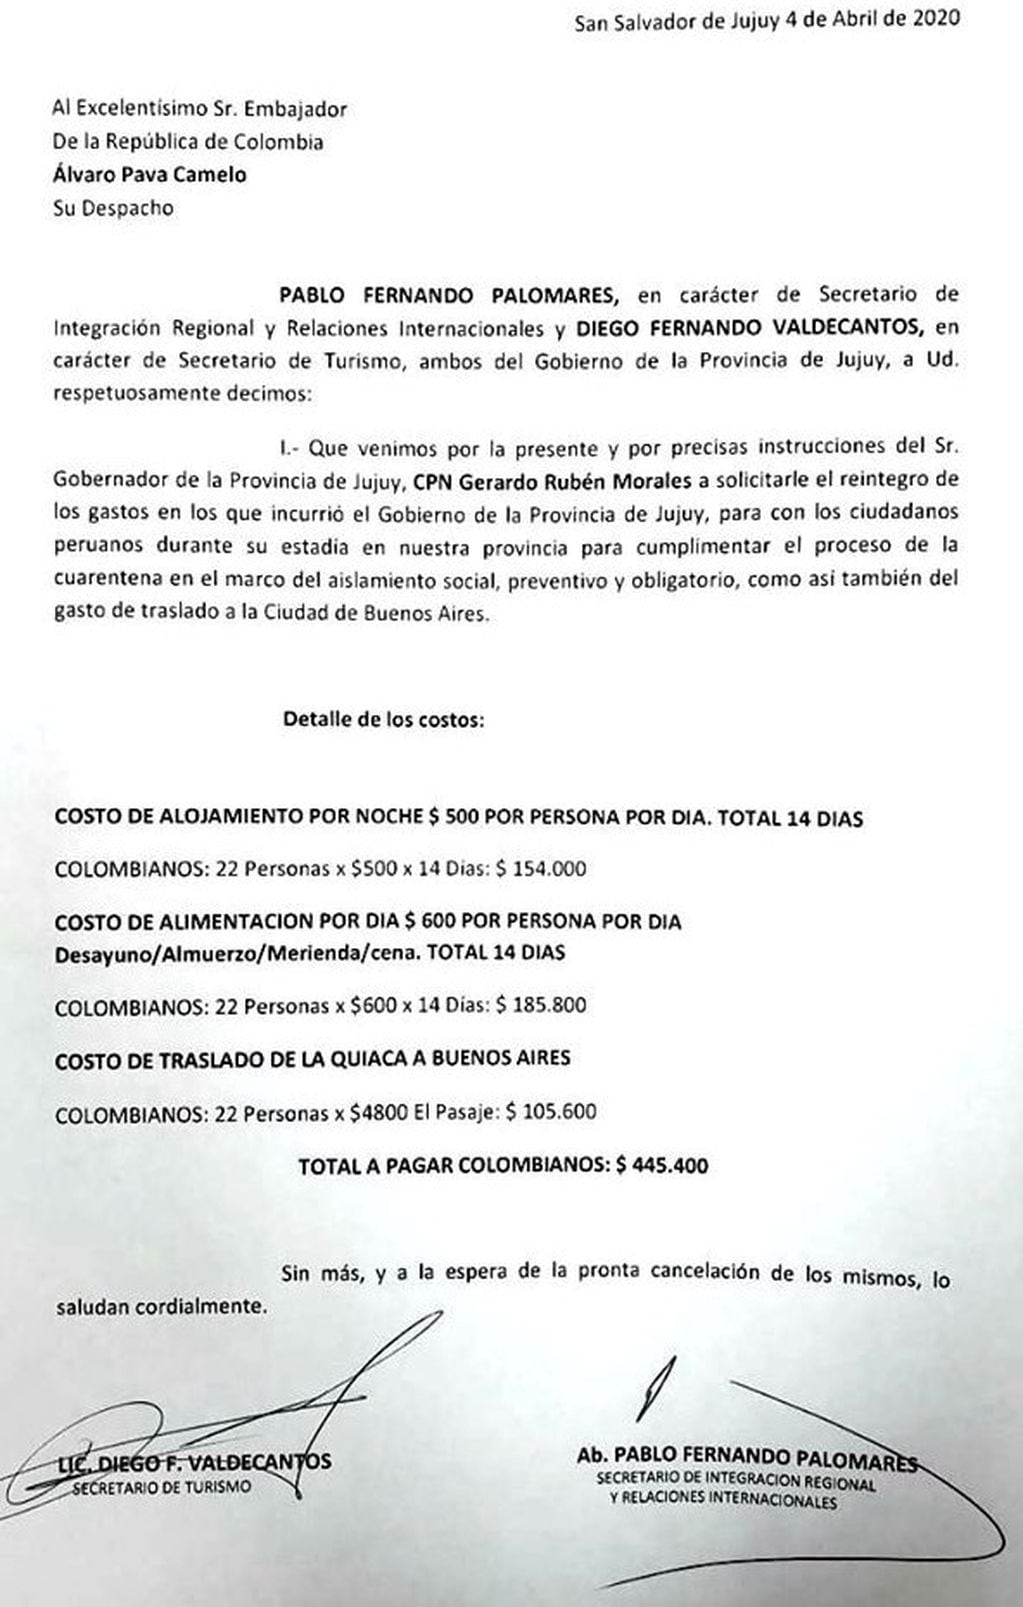 La "factura" por los gastos de los ciudadanos colombianos asciende a $445.400.-.